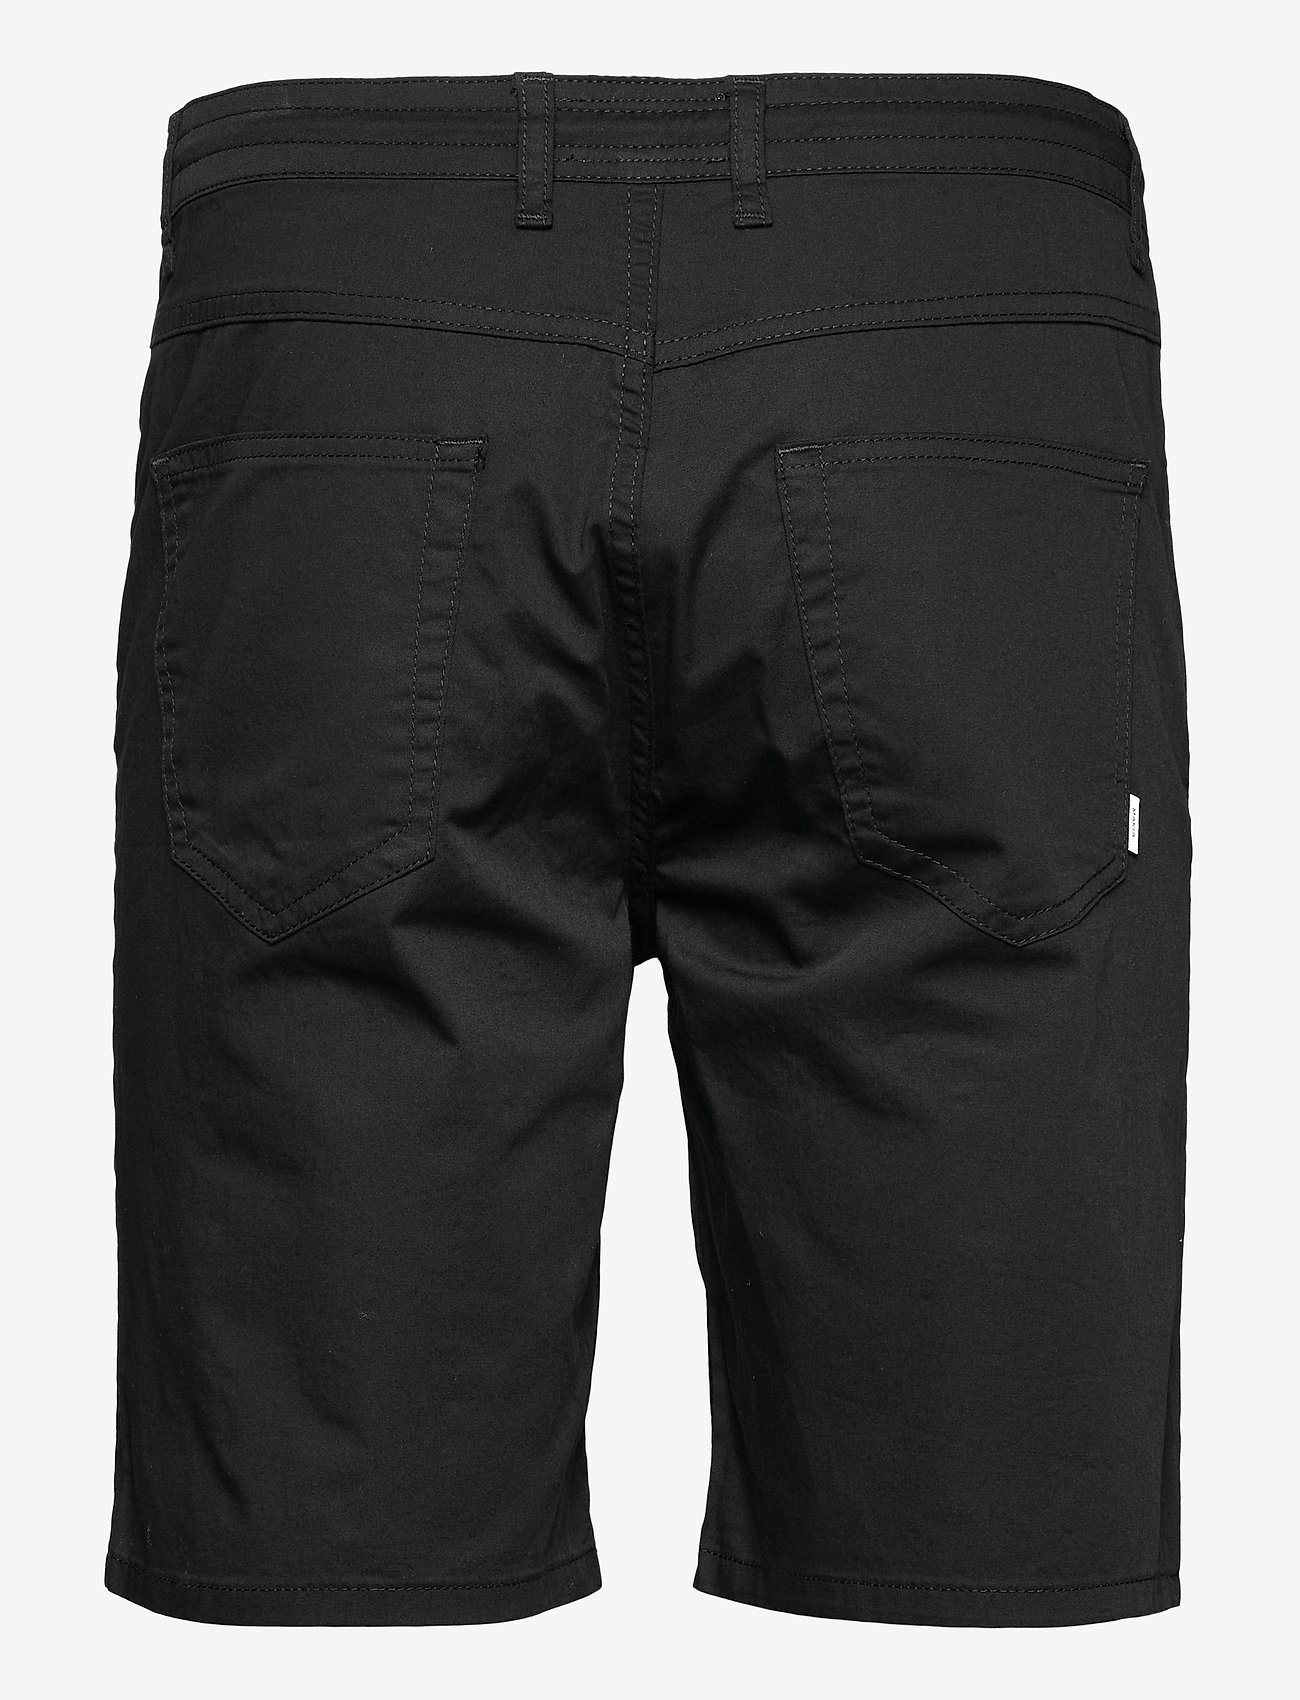 Makia - Border Shorts - chino stila šorti - black - 1